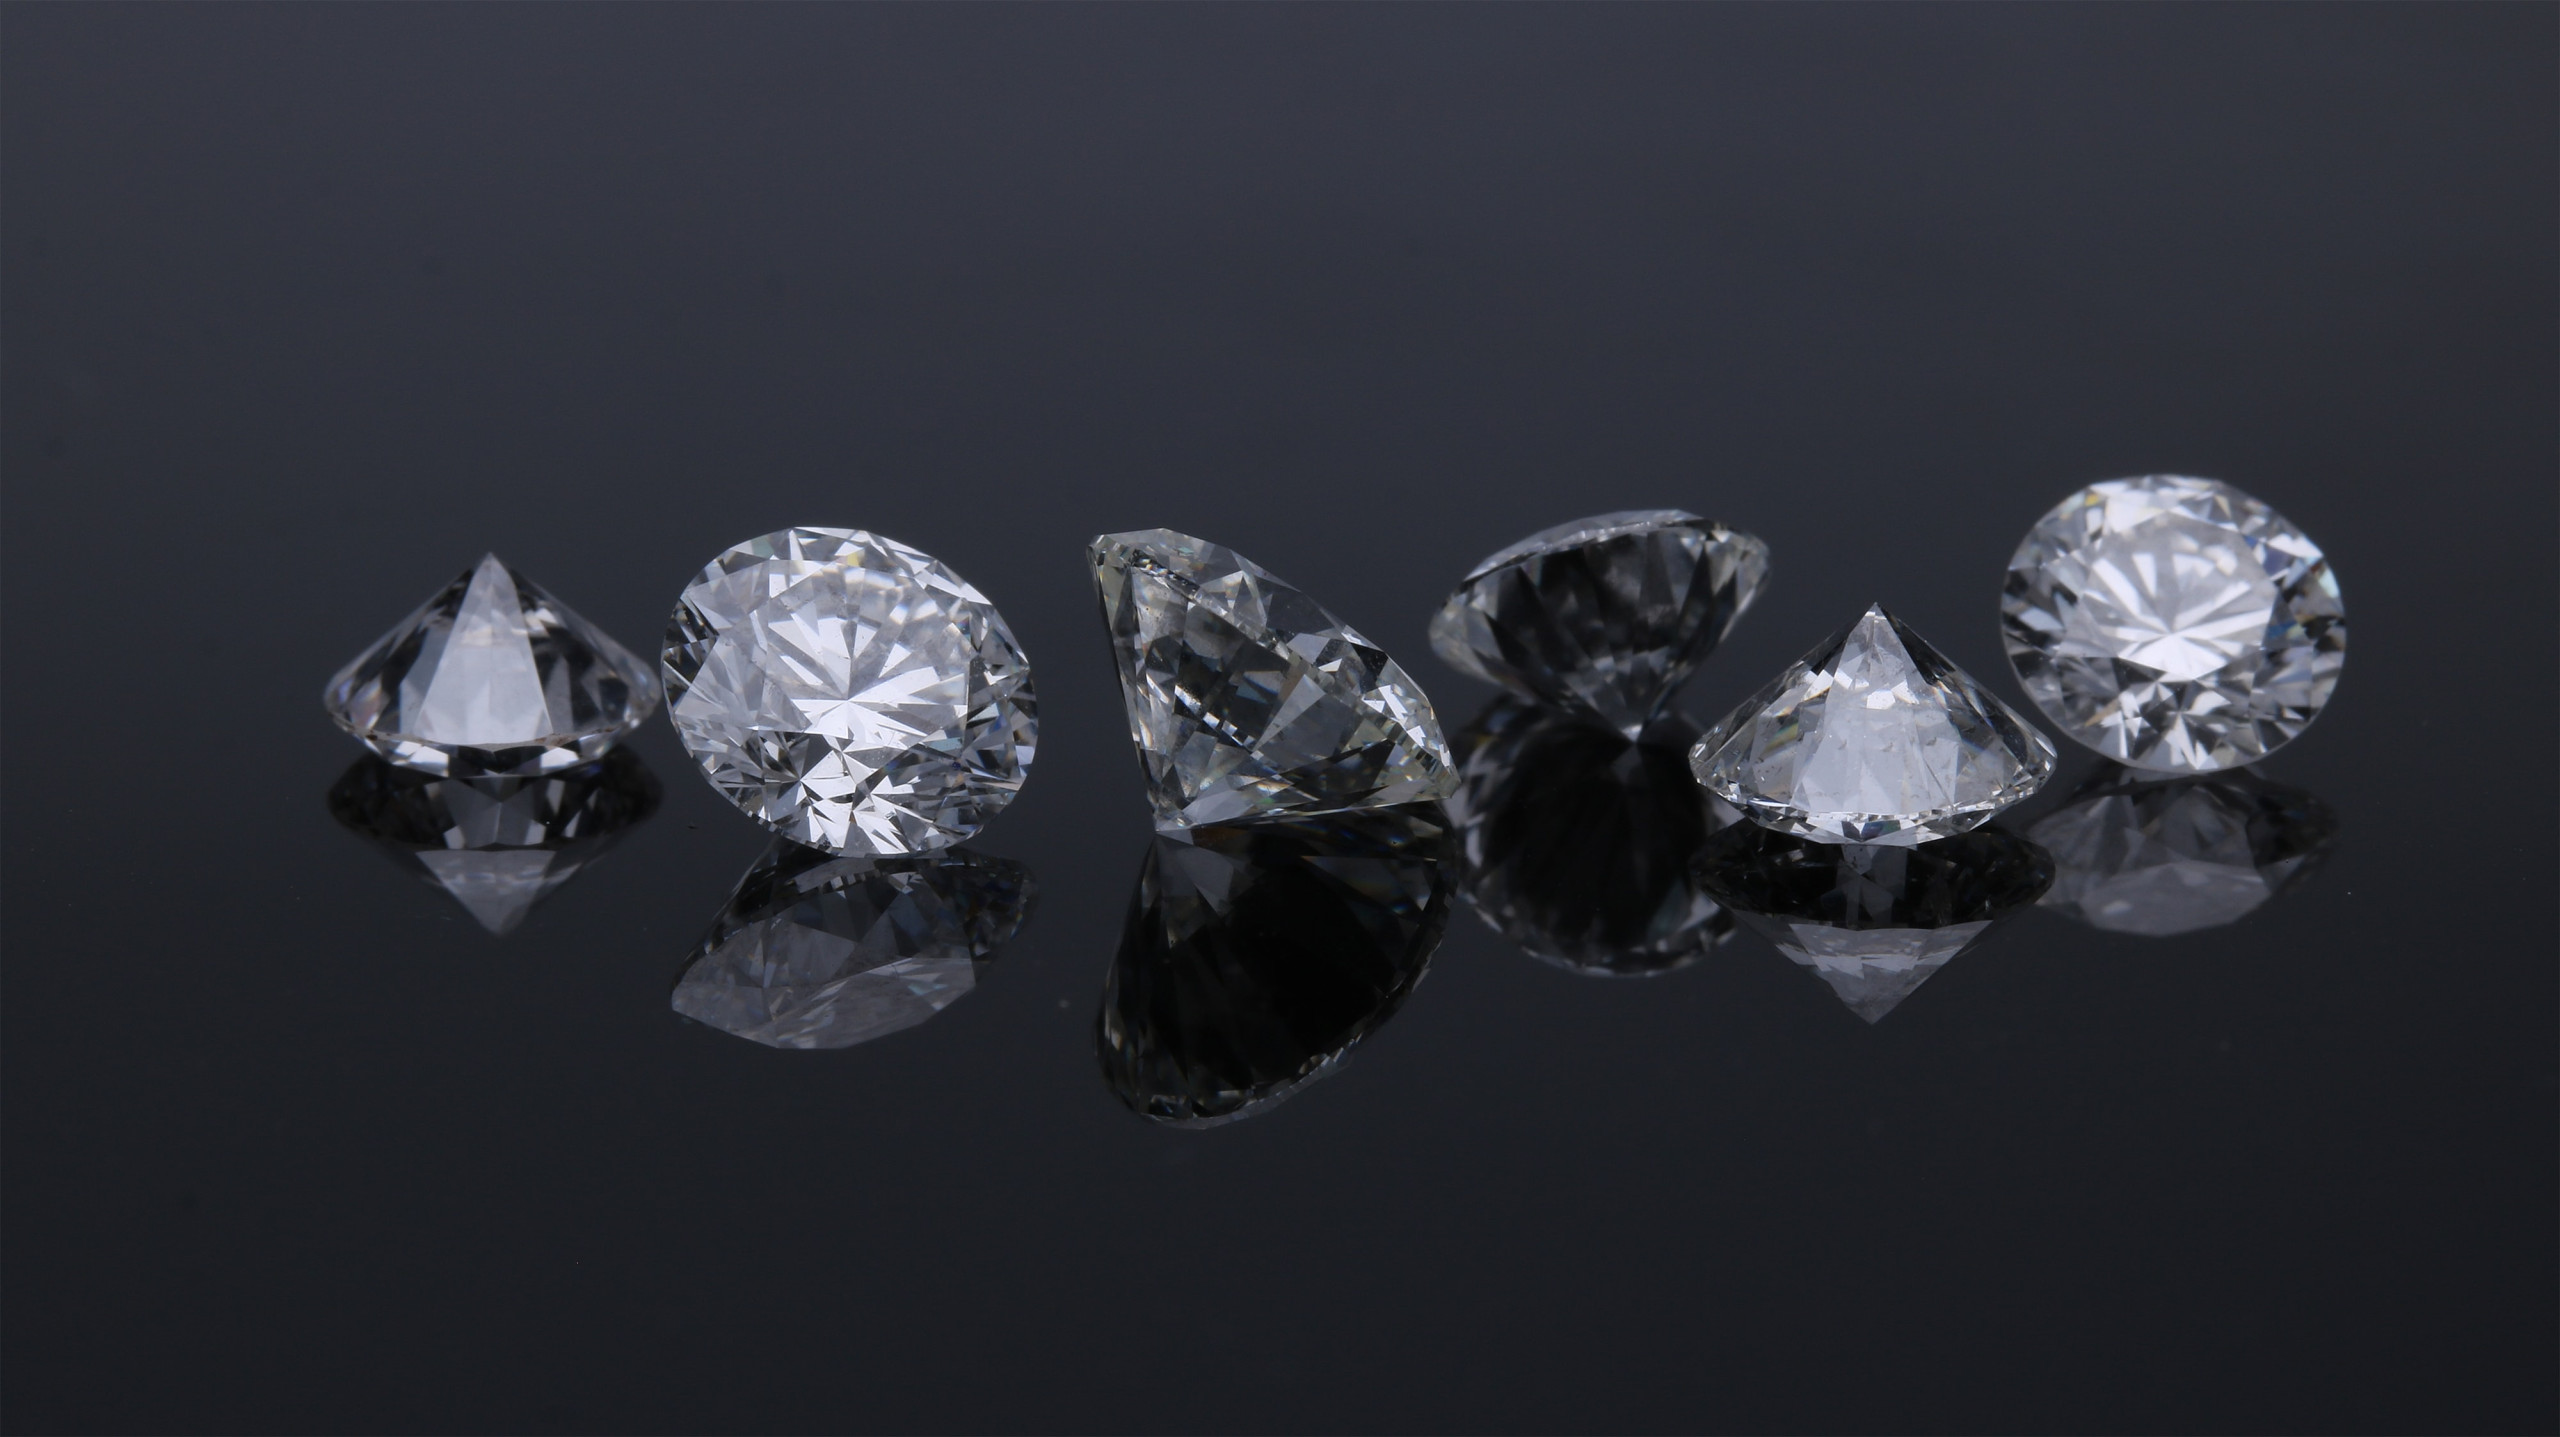 Pesquisadores afirmam que diamante mais duro encontrado na Terra não veio daqui